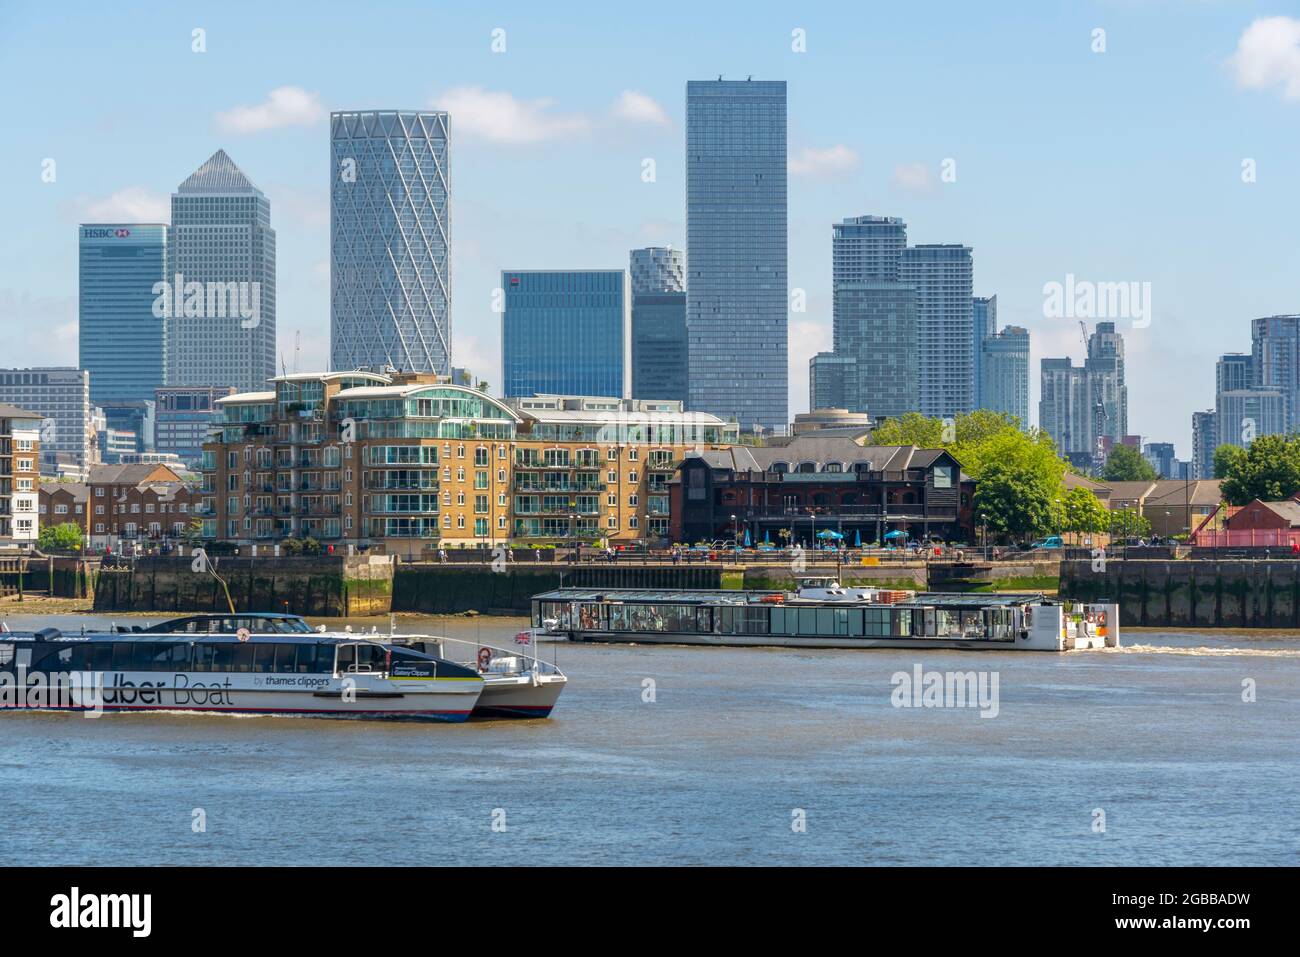 Vue sur le quartier financier de Canary Wharf et bateau-taxi depuis Thames Path, Londres, Angleterre, Royaume-Uni, Europe Banque D'Images